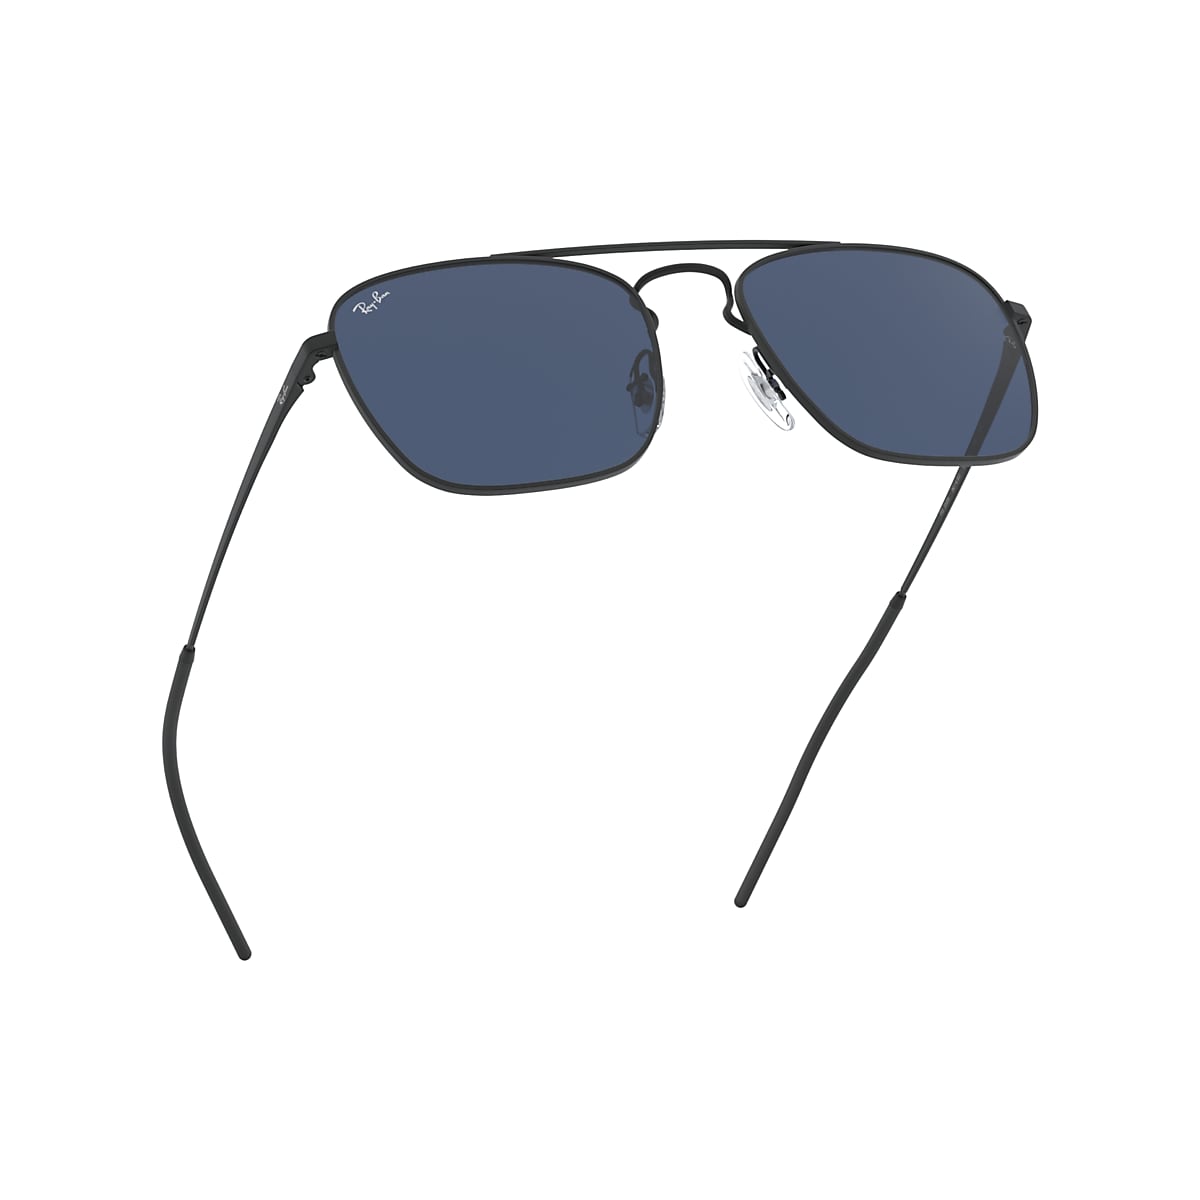 Ray-Ban Rb3588 Sunglasses Black Frame Blue Lenses 55-19